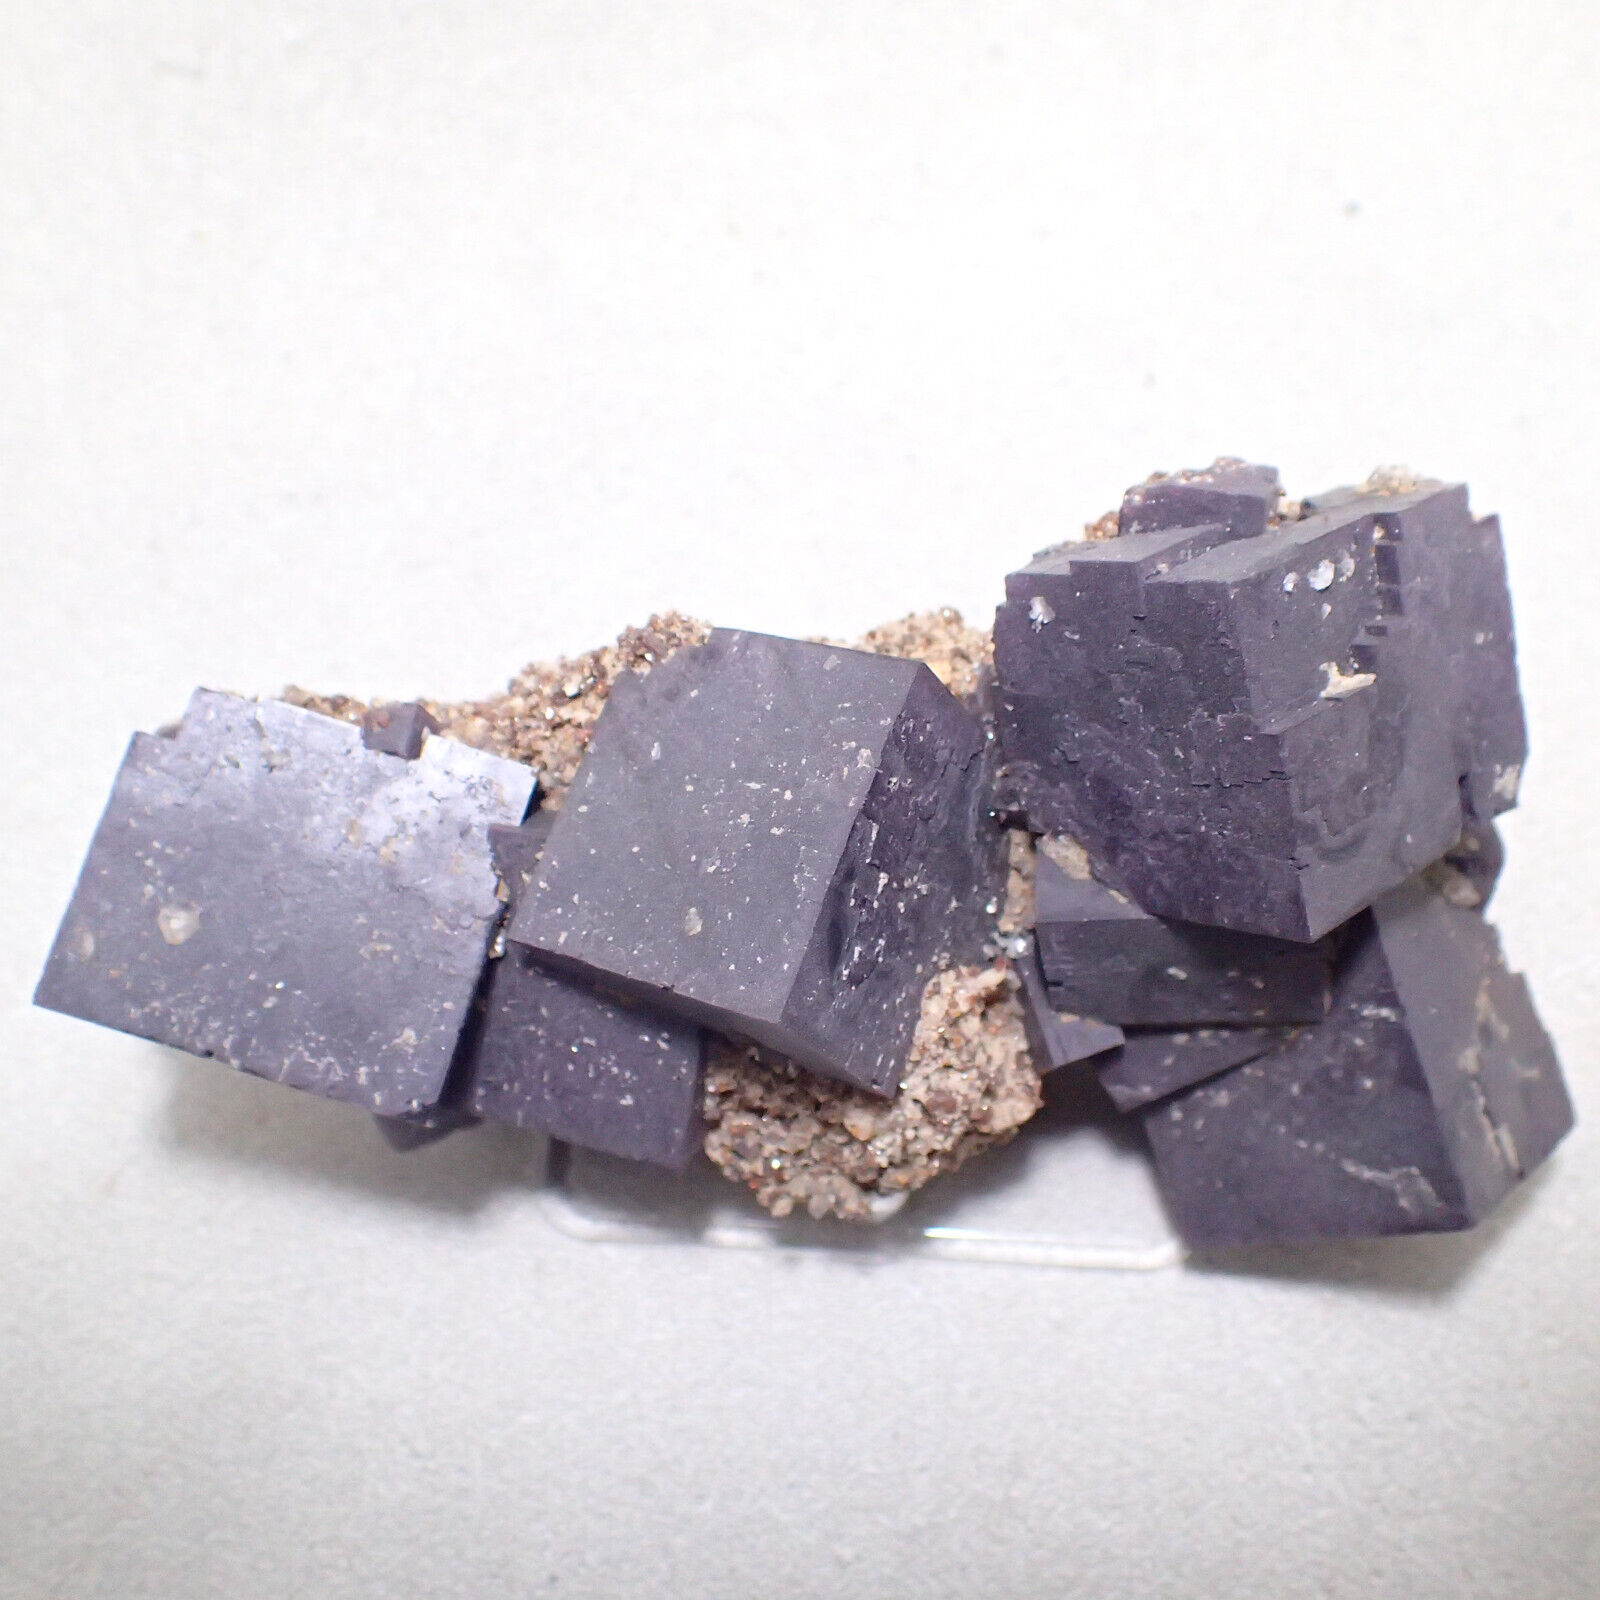 Fluorite on Sphalerite, Annabel Lee Mine, Harris Creek District, Illinois